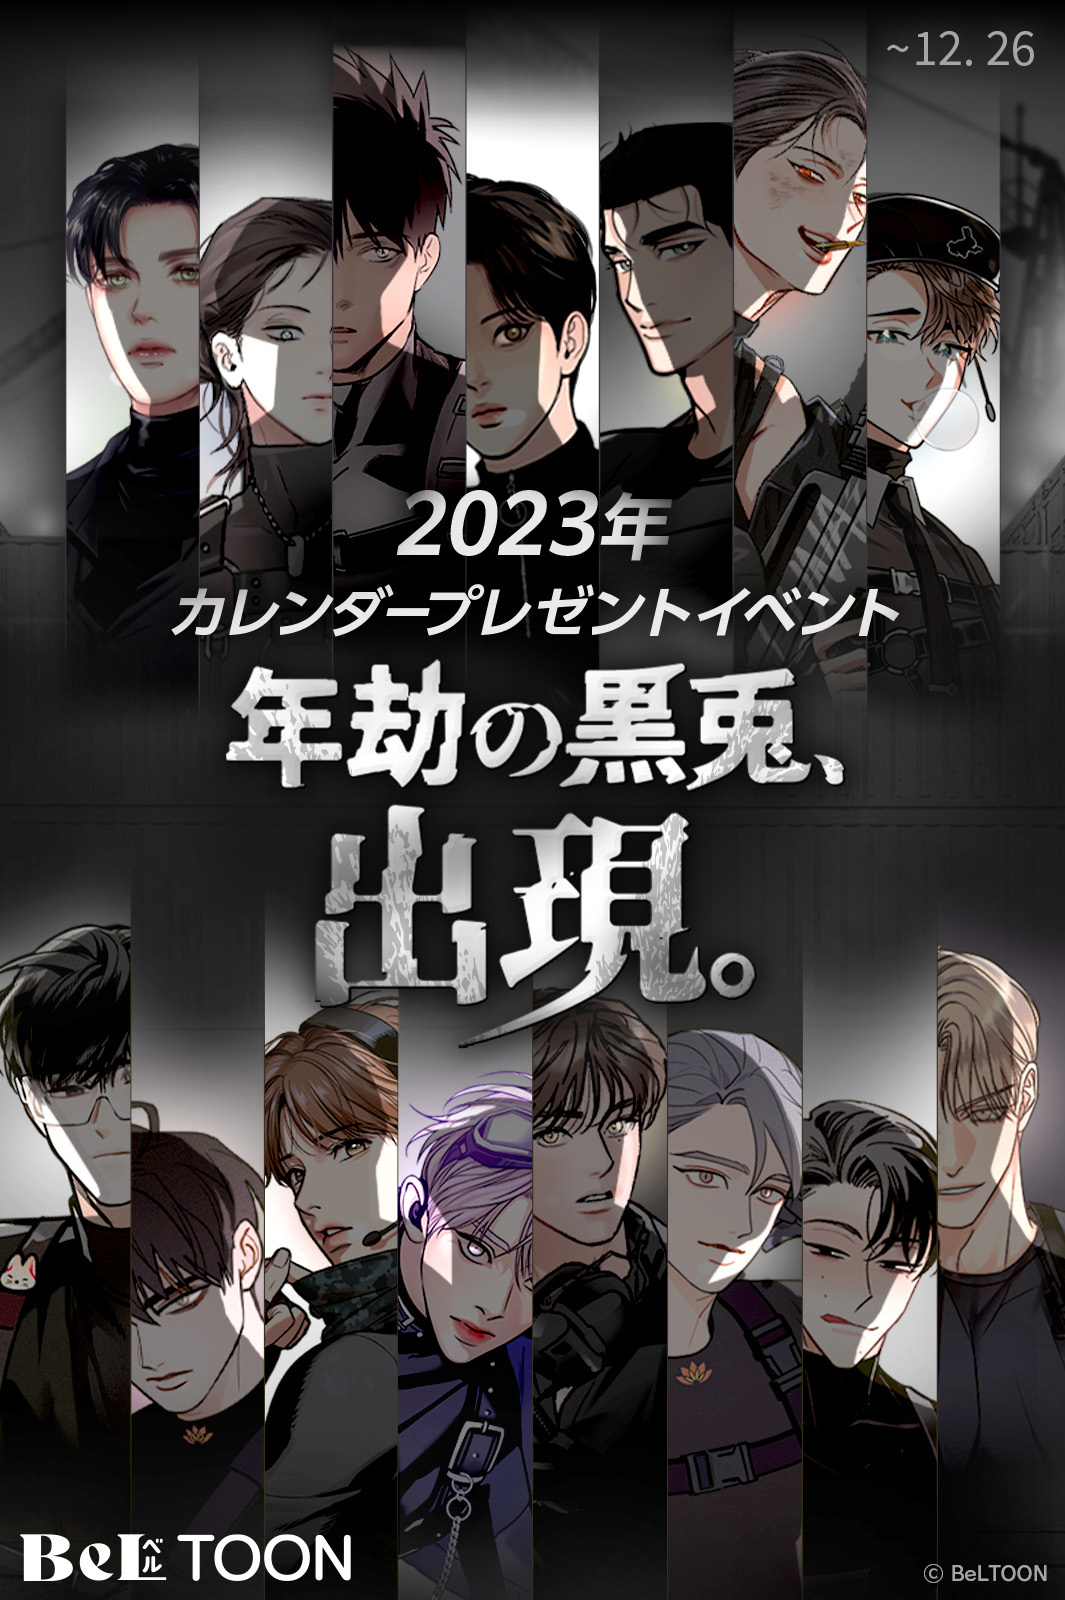 年劫の黒兎 2023年 カレンダー レジンコミックス 韓国BL - ミュージシャン